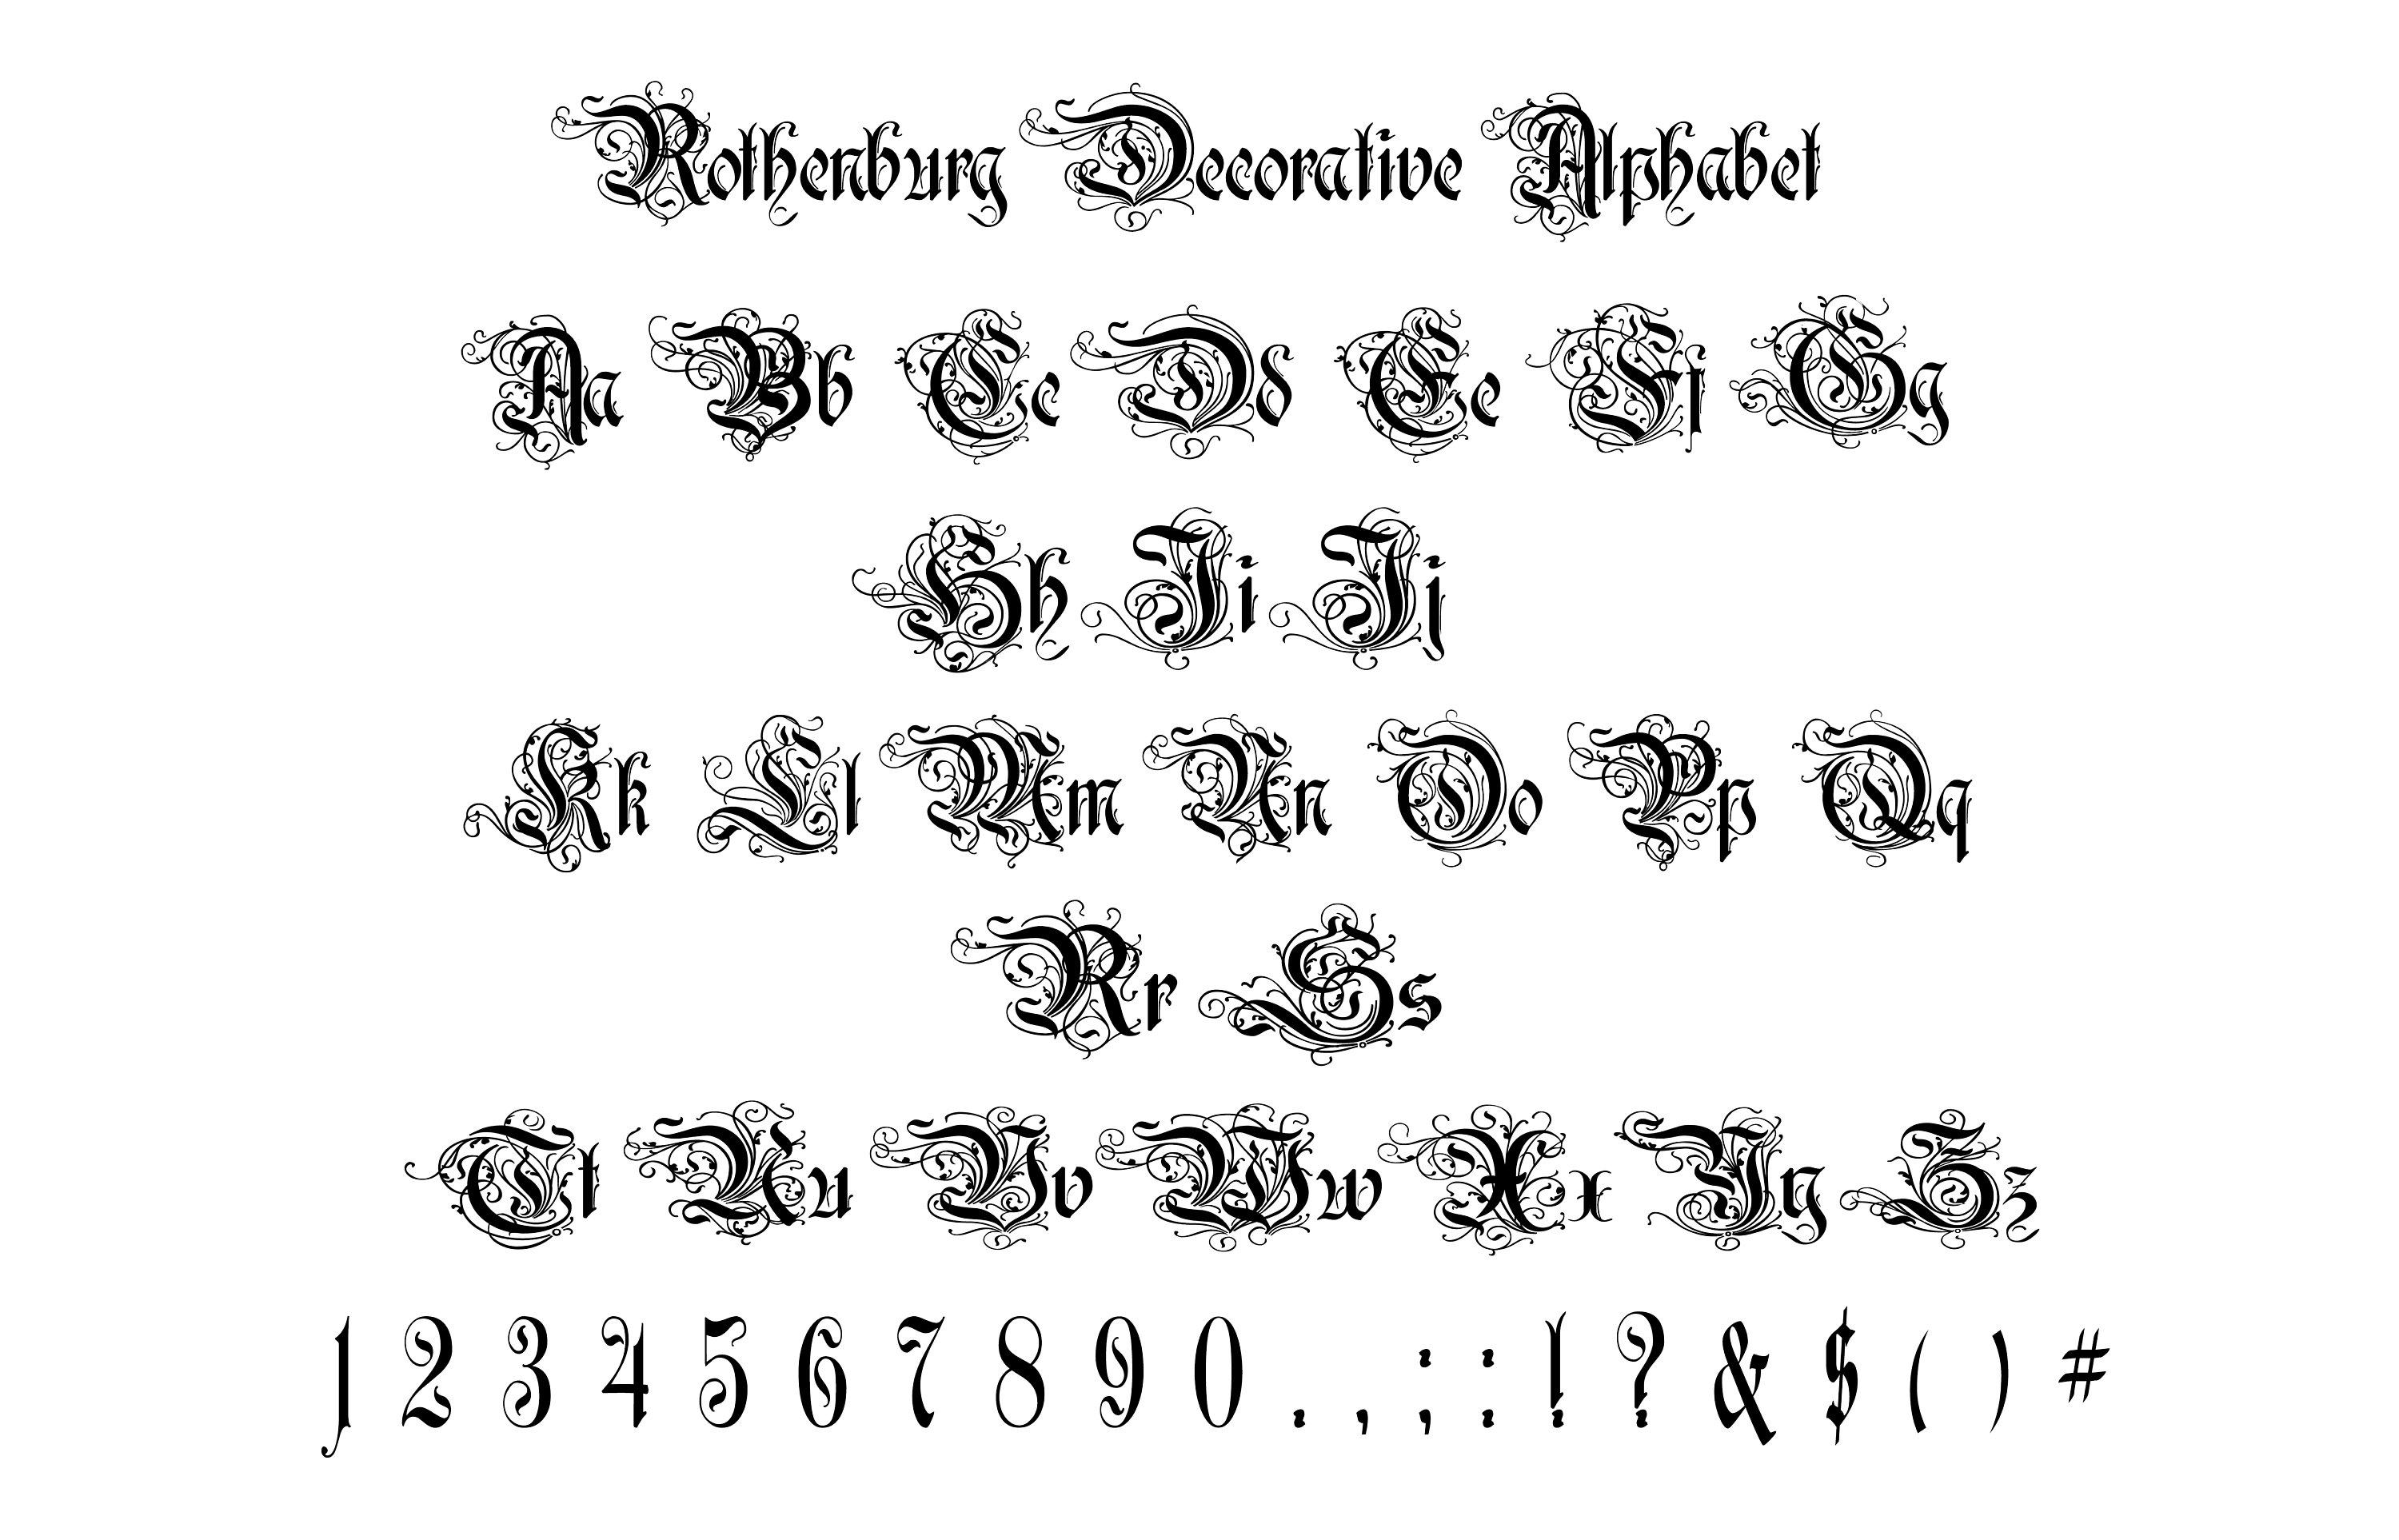 Rothenburg Decorative Alphabet Svg, Rothenburg Decorative Letters